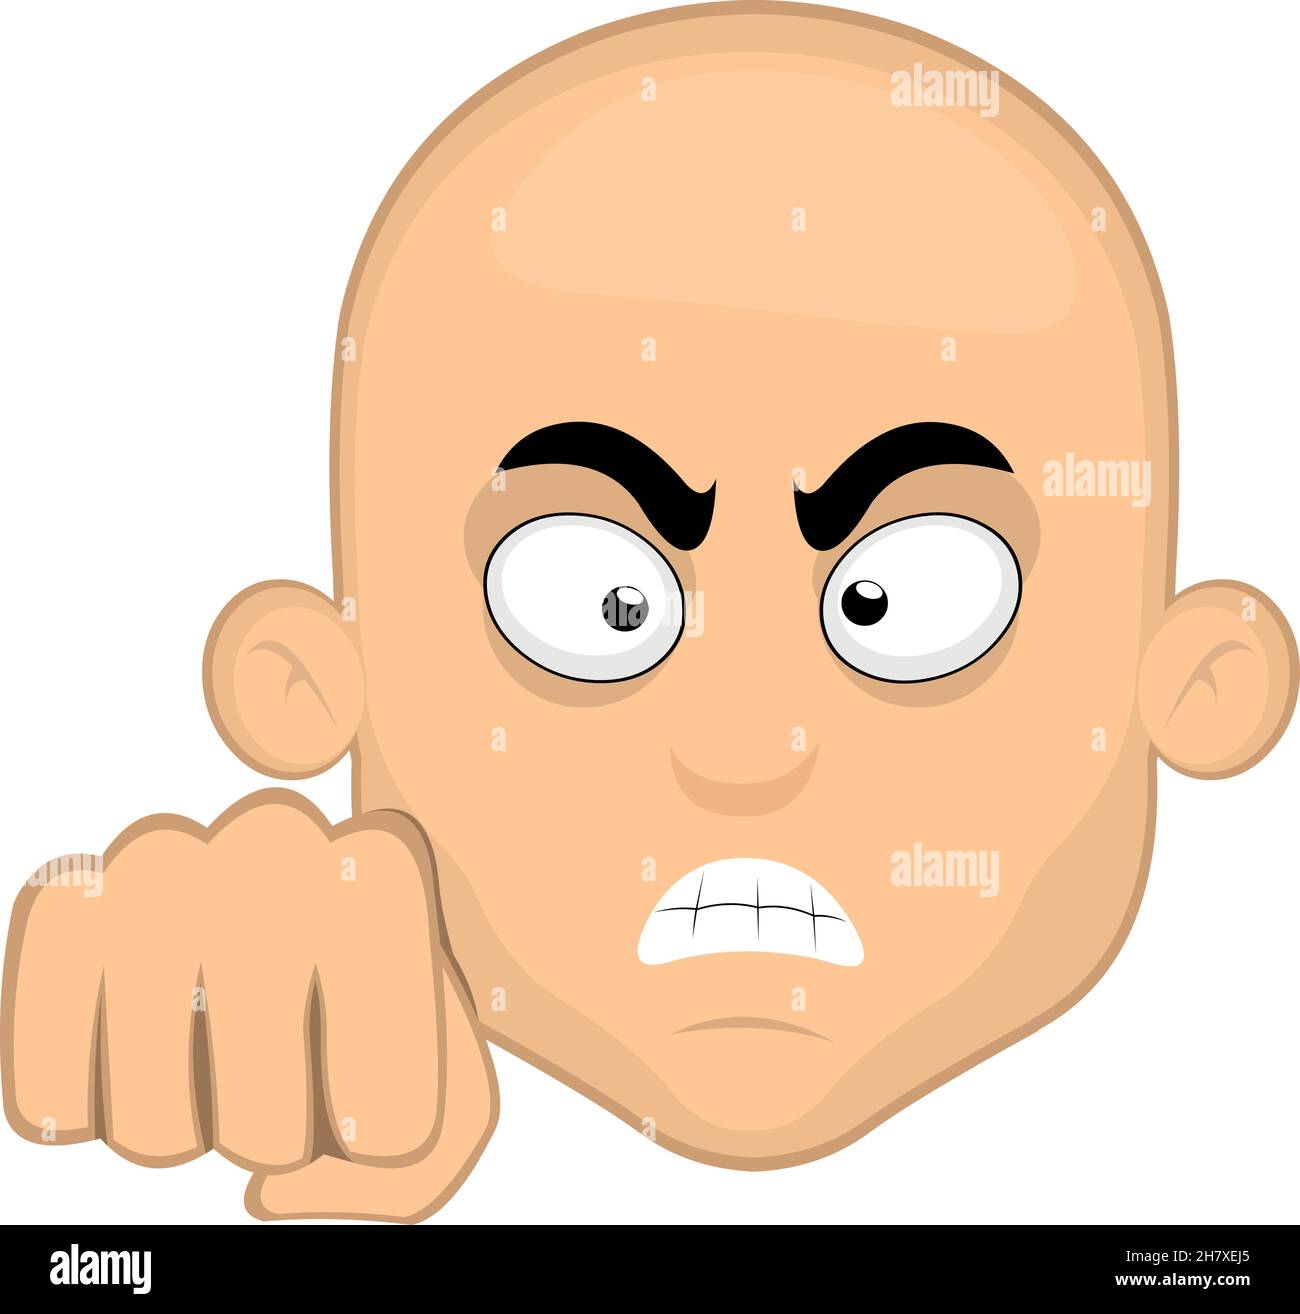 Illustrazione vettoriale del volto di un uomo calvo di cartone animato che dà un urto pugno Illustrazione Vettoriale